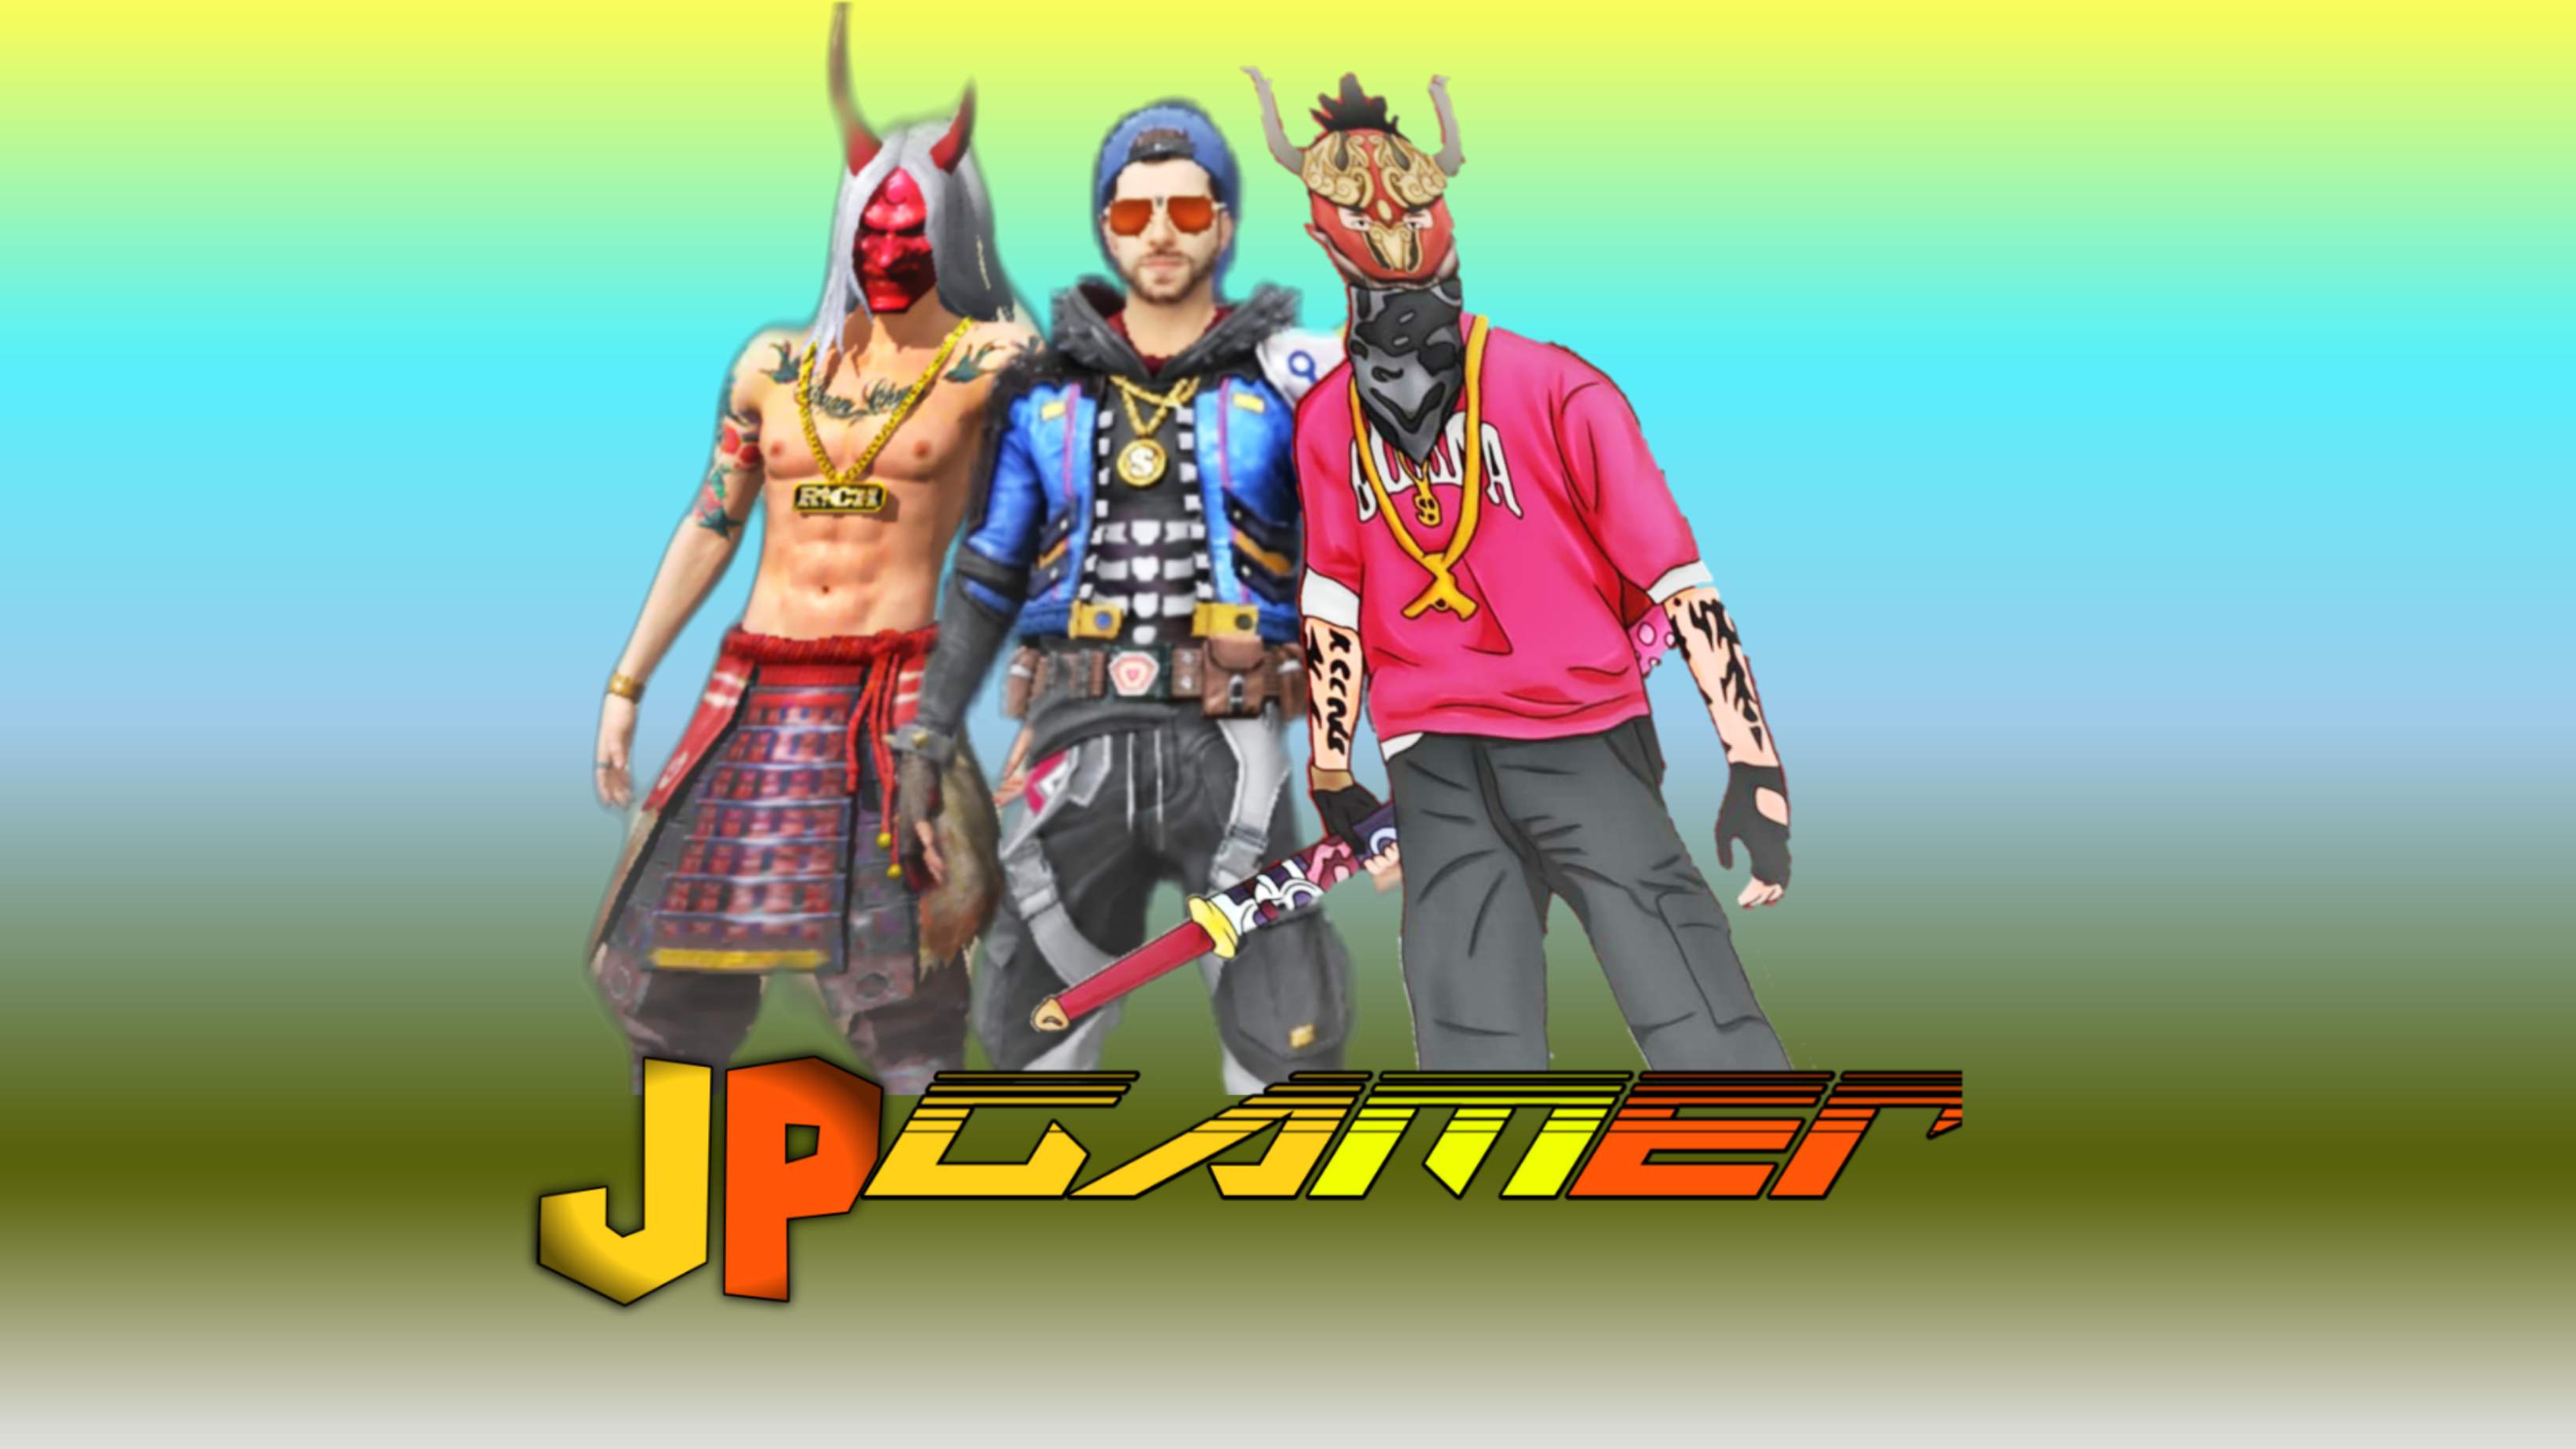 JP Gamer